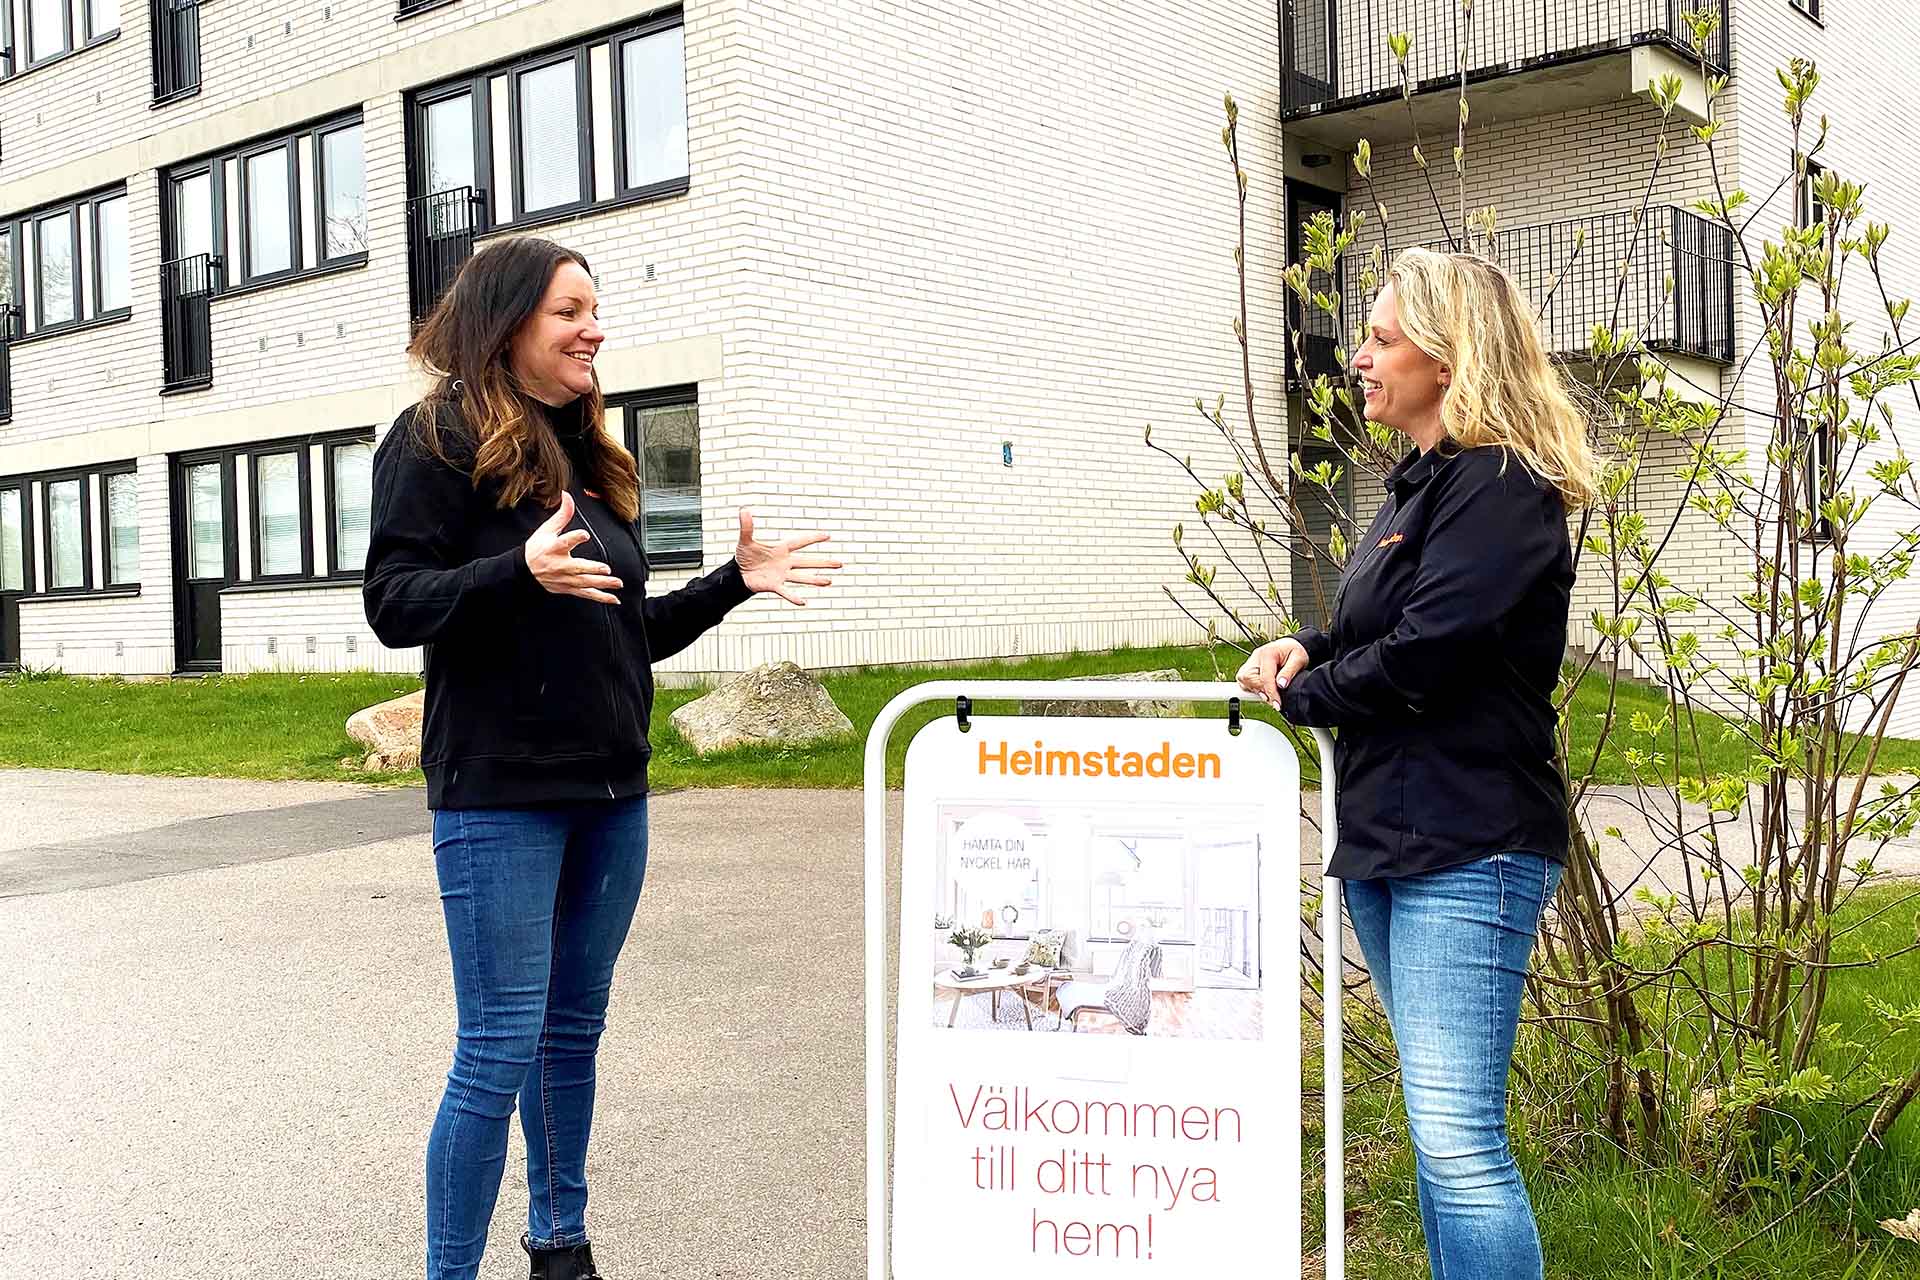 ”Mitt arbete präglas av omtanke till våra hyresgäster”, säger Anna Pertell (till vänster) som jobbar med bosociala frågor i Växjö. Här tillsammans med vår bostadsuthyrare Carin Silbrand Aronsson